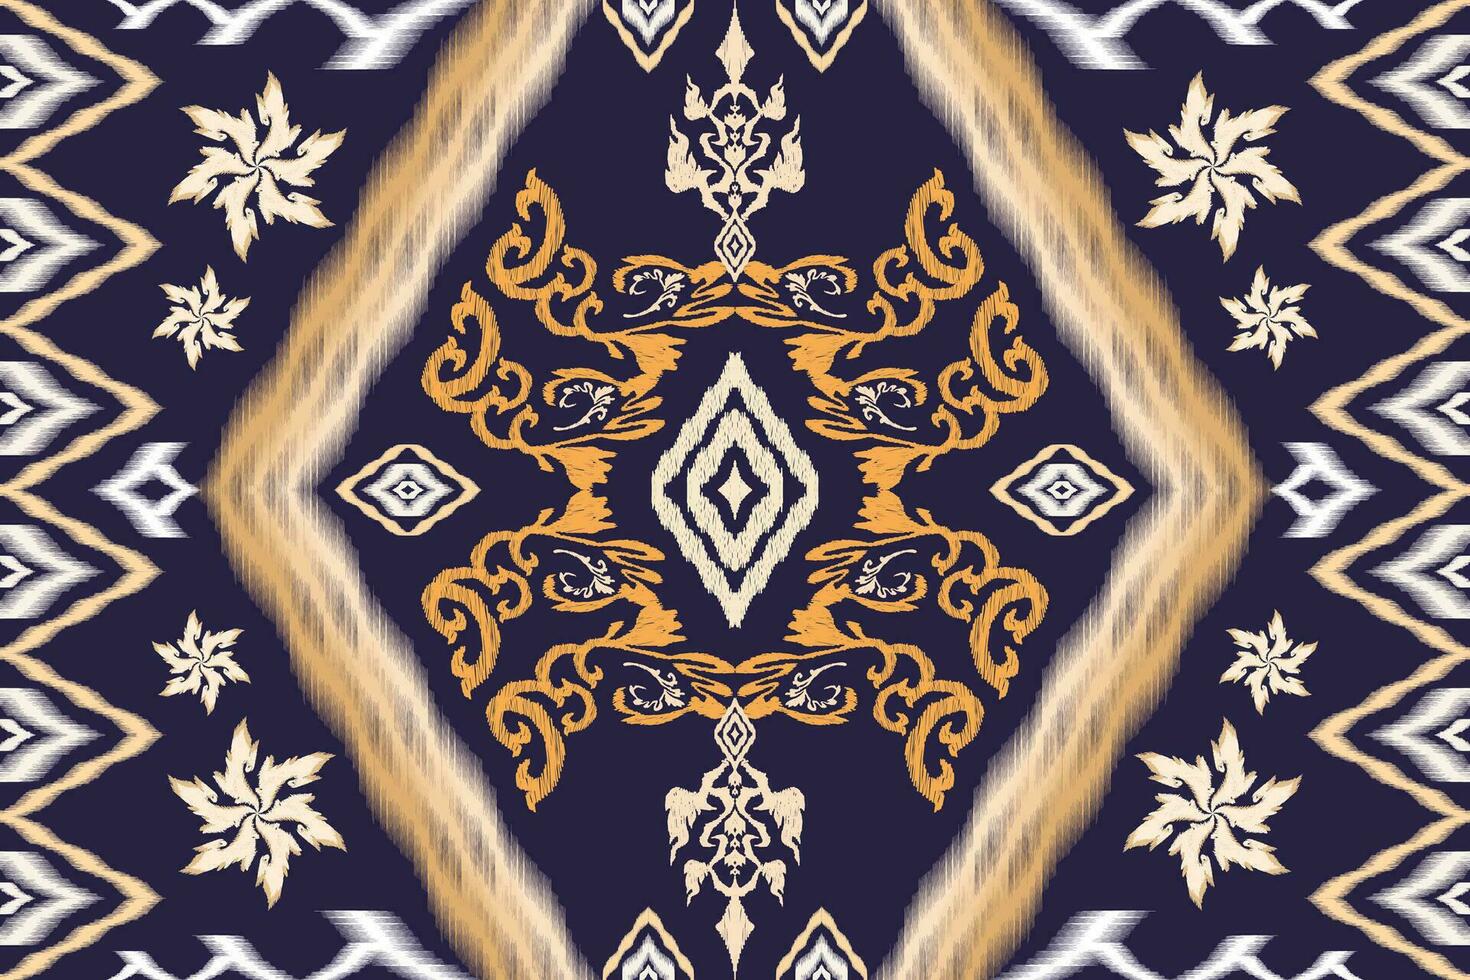 geometrisk etnisk aztec broderi stil.figur ikat orientalisk traditionell konst mönster.design för etnisk bakgrund, tapeter, mode, kläder, omslag, tyg, element, sarong, grafik, vektor illustration.